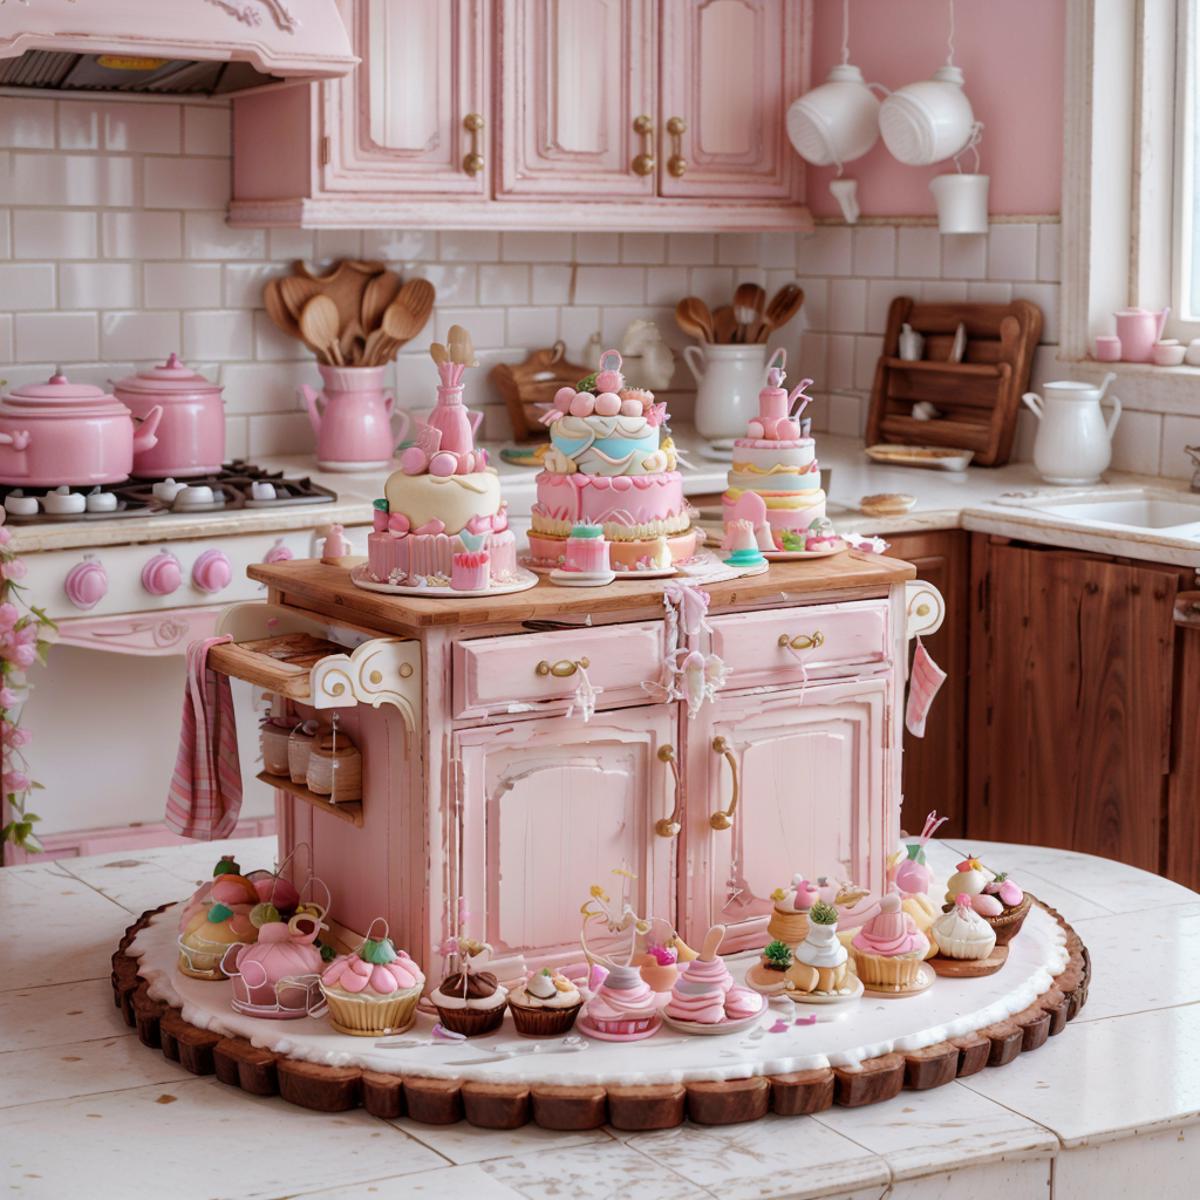 Cake Style - Custom shaped cakes! image by Murdo